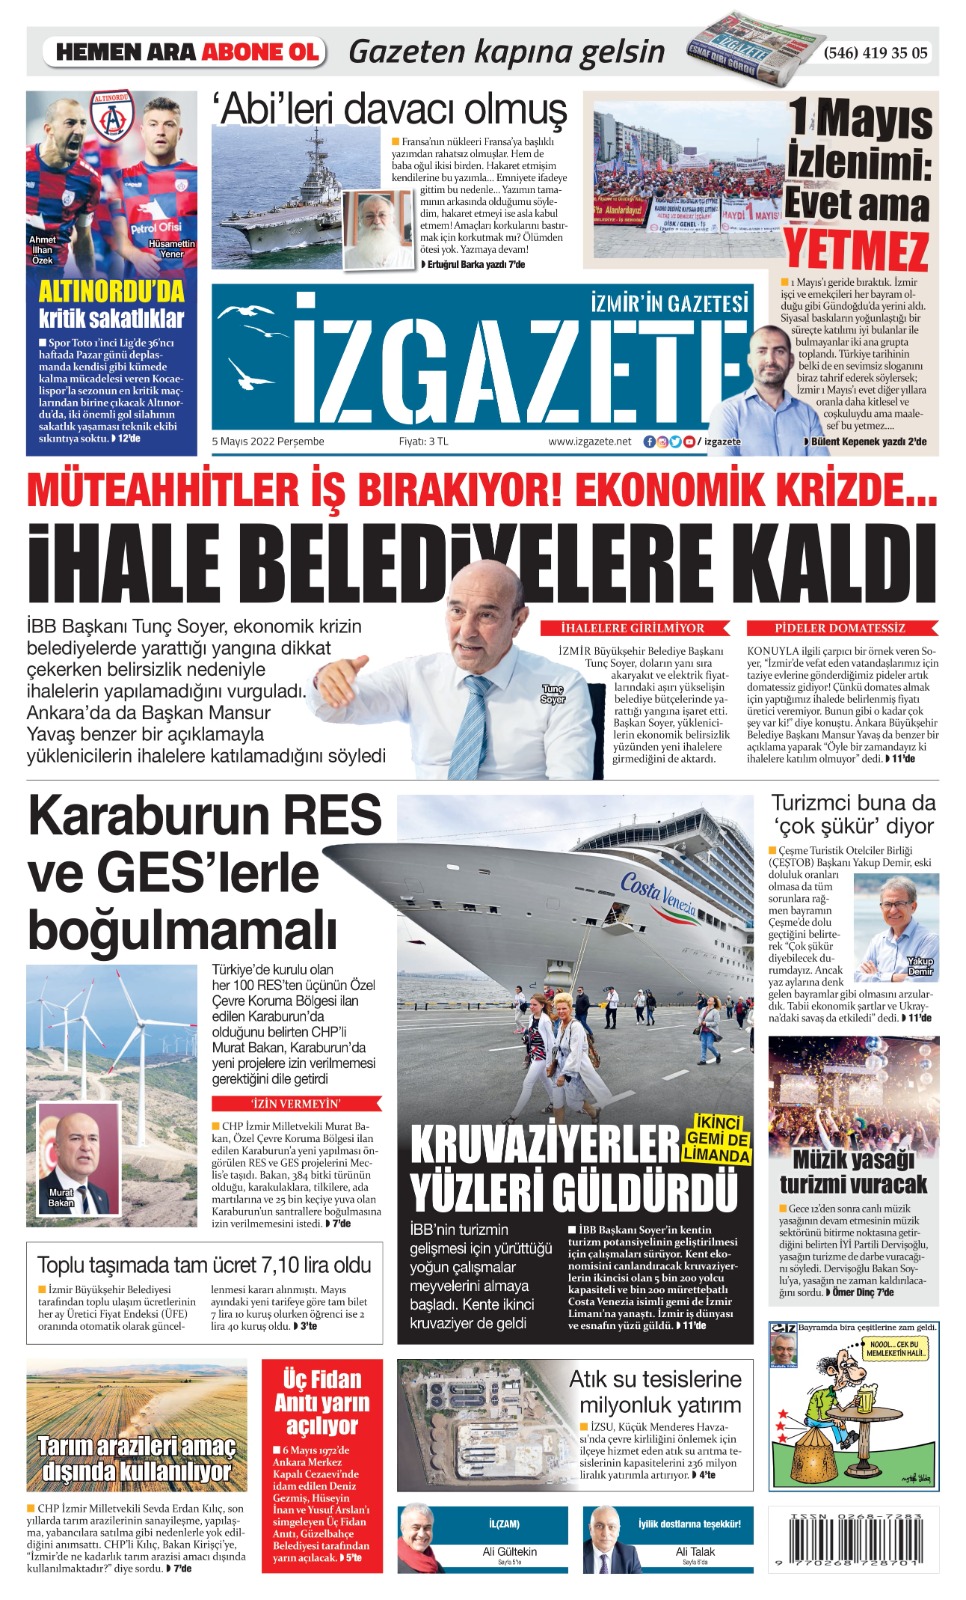 İz Gazete - İzmir'in Gazetesi - 05.05.2022 Manşeti